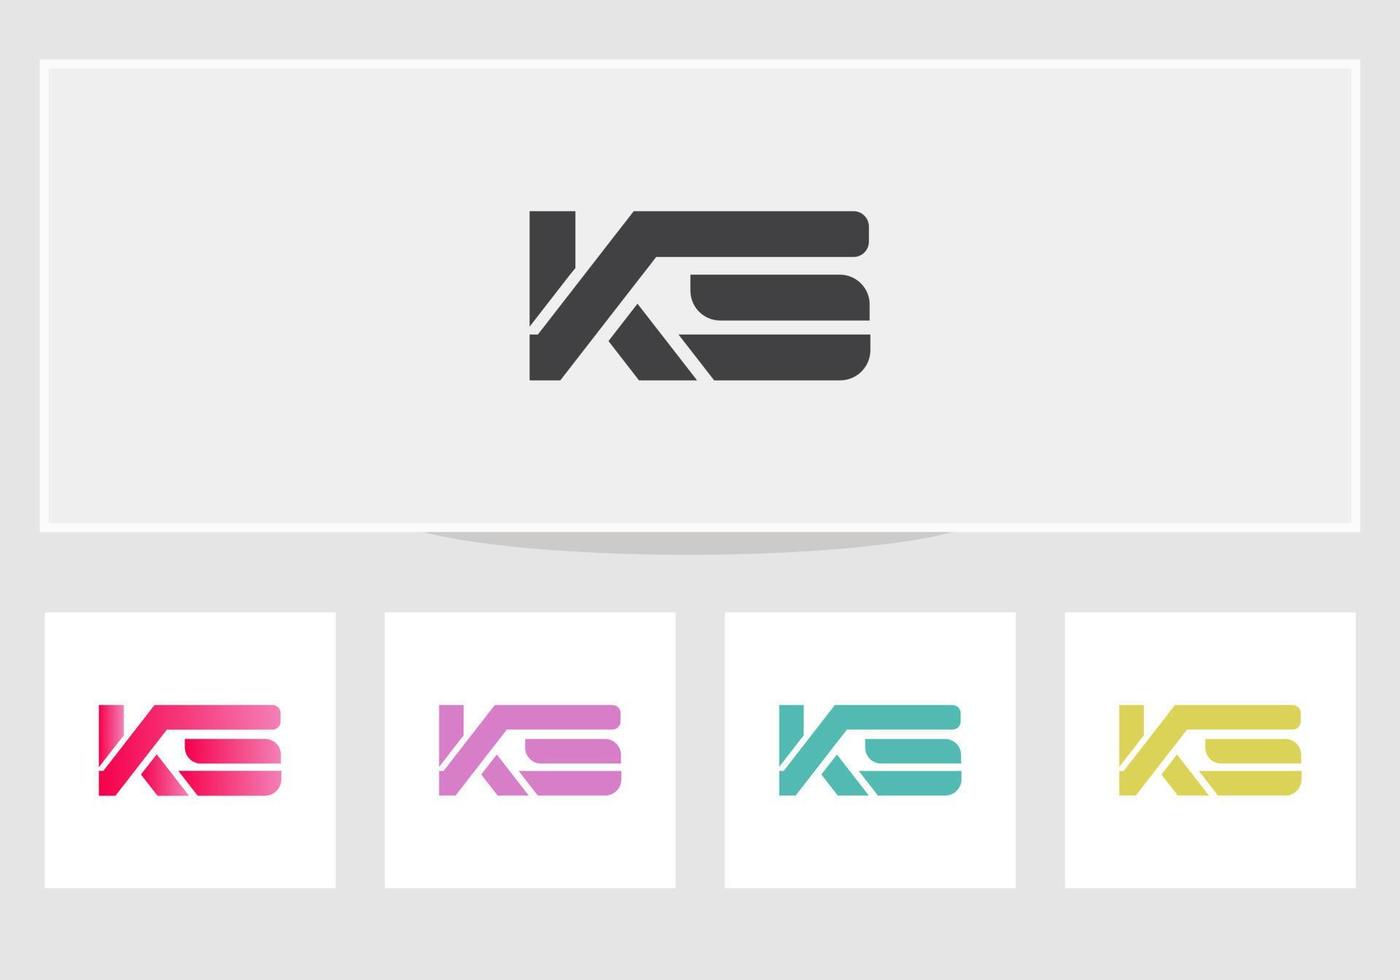 création de logo ks. vecteur de conception de logo ks moderne à la mode moderne